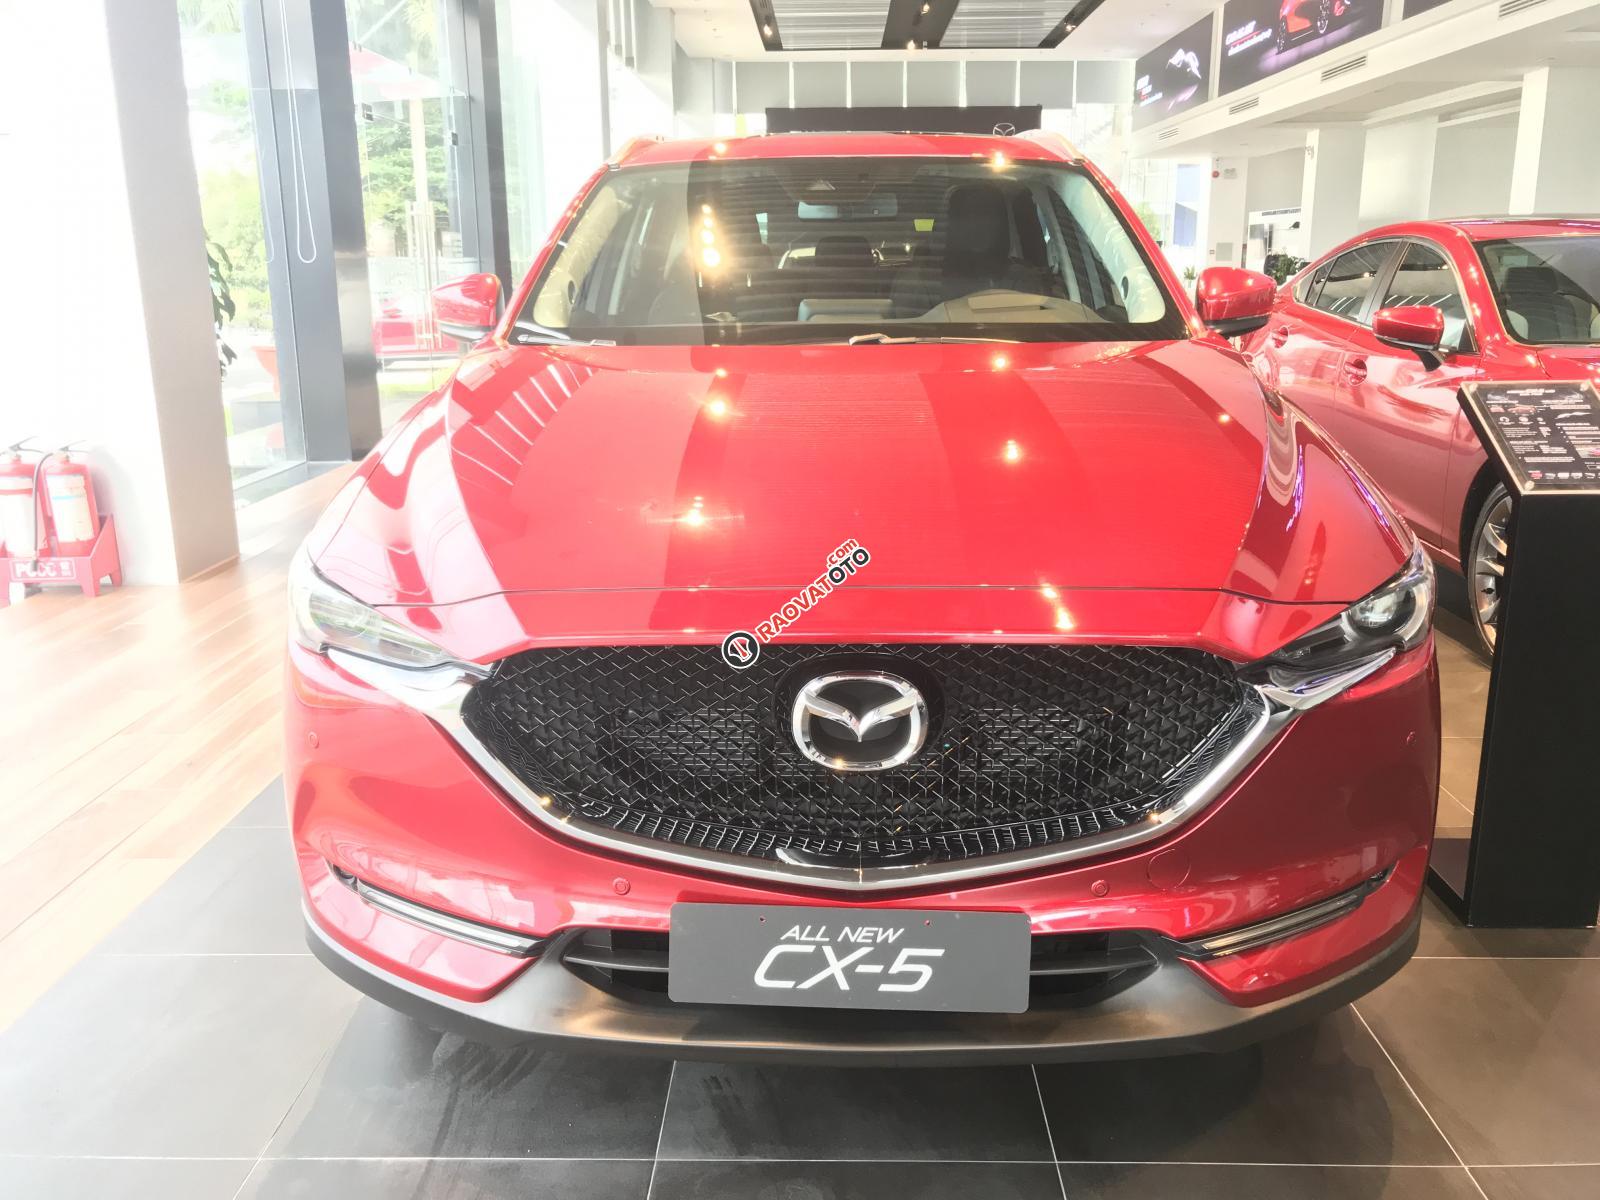 Bán Mazda CX5 2.0L FWD 2019, đỏ pha lê, hỗ trợ vay 85%, trả trước 200tr giao xe, LH: 0376684593-0